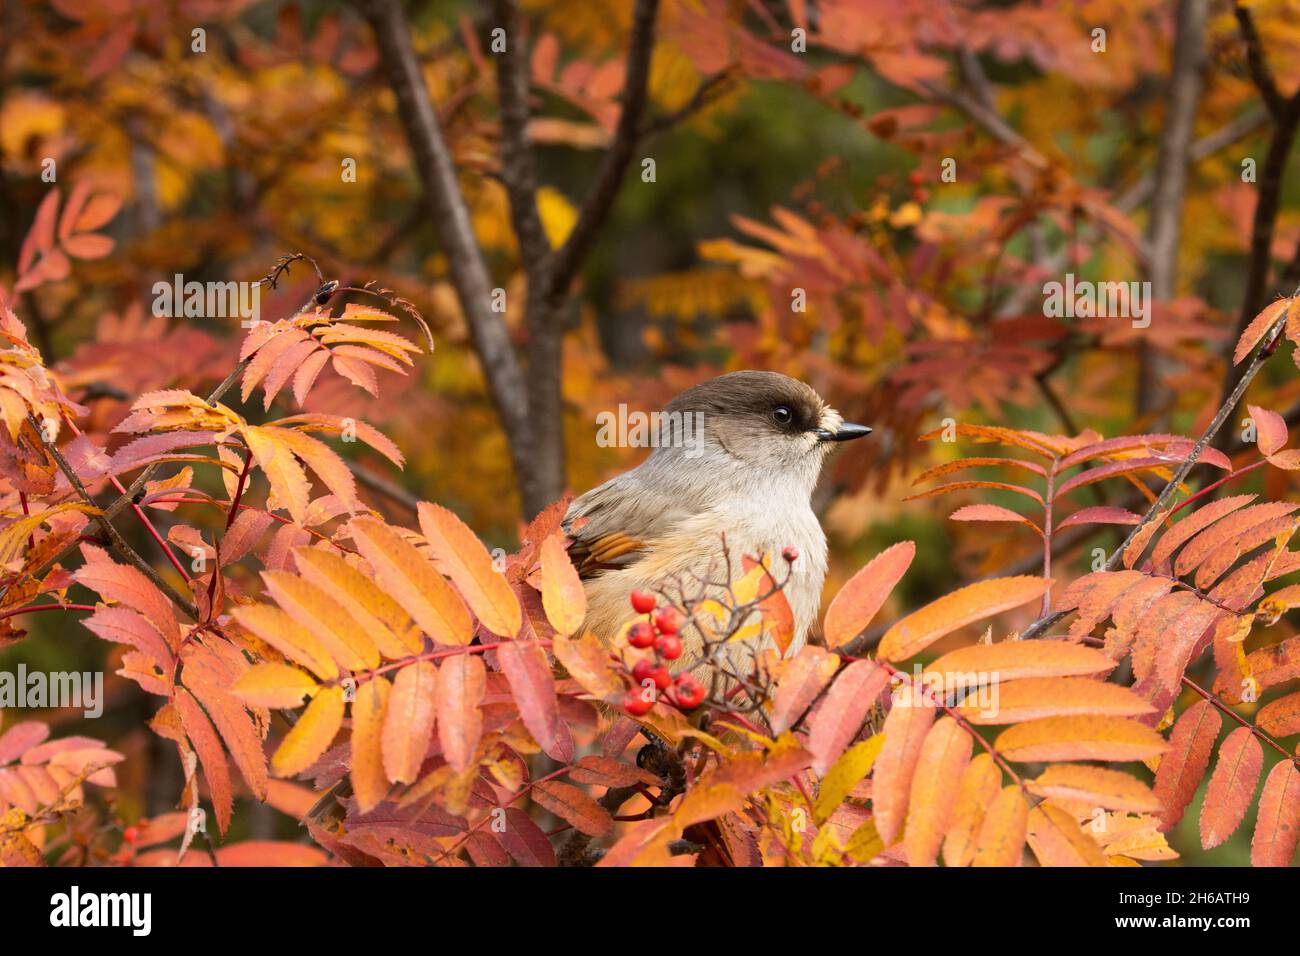 Magnifique oiseau taïga geai sibérien, Perisoreus infaustus au milieu des feuilles de Rowan colorées pendant le feuillage d'automne près de Kuusamo, Finlande Banque D'Images